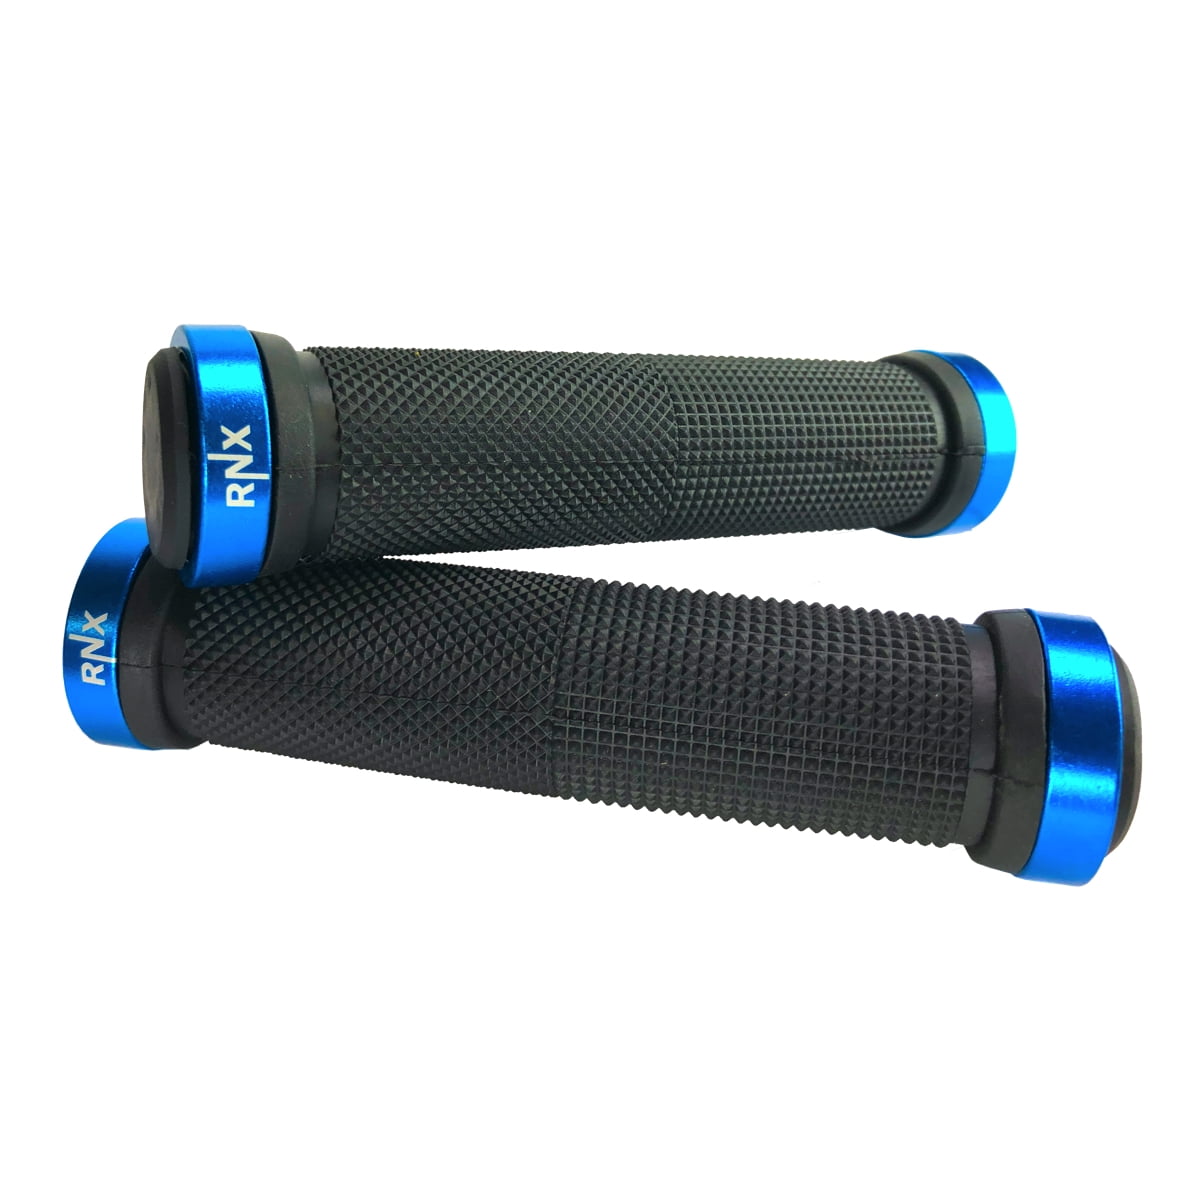 Fabric Xl Grips Blue/Black FP7626U12OS 